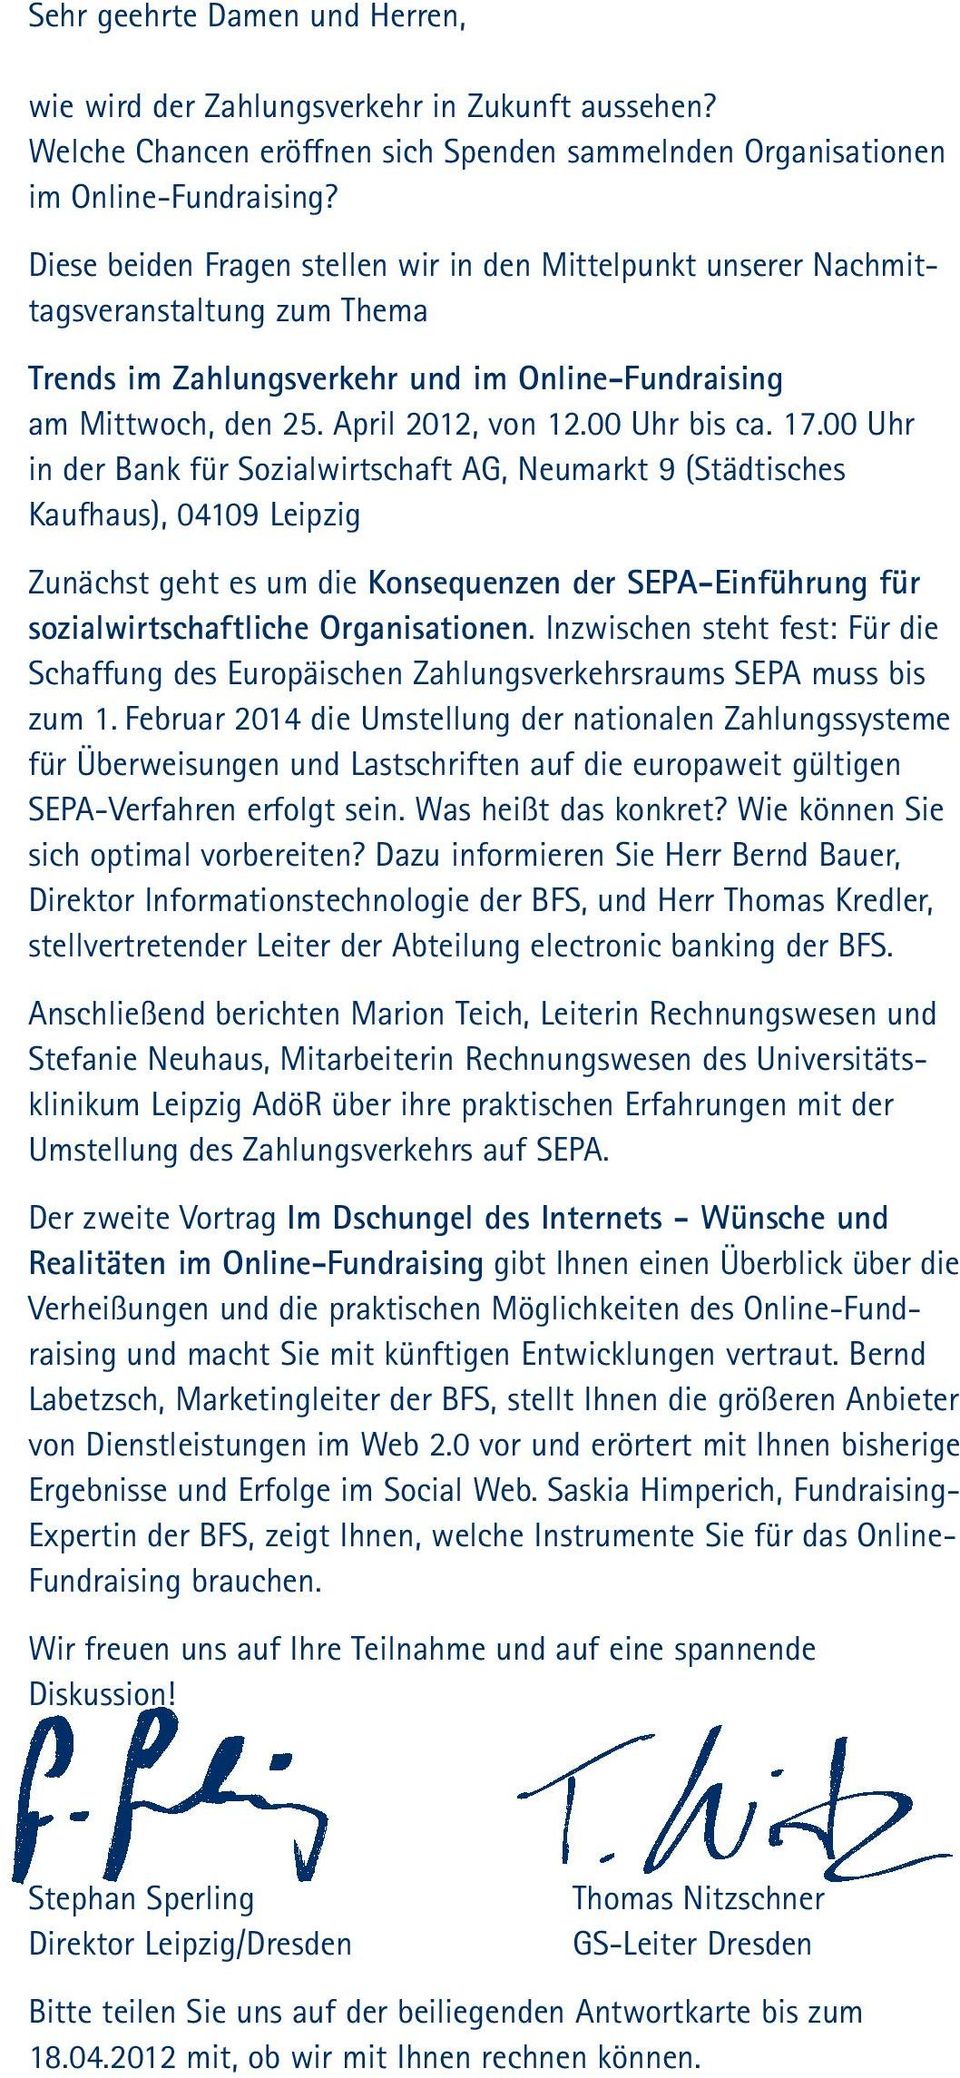 17.00 Uhr in der Bank für Sozialwirtschaft AG, Neumarkt 9 (Städtisches Kaufhaus), 04109 Leipzig Zunächst geht es um die Konsequenzen der SEPA-Einführung für sozialwirtschaftliche Organisationen.